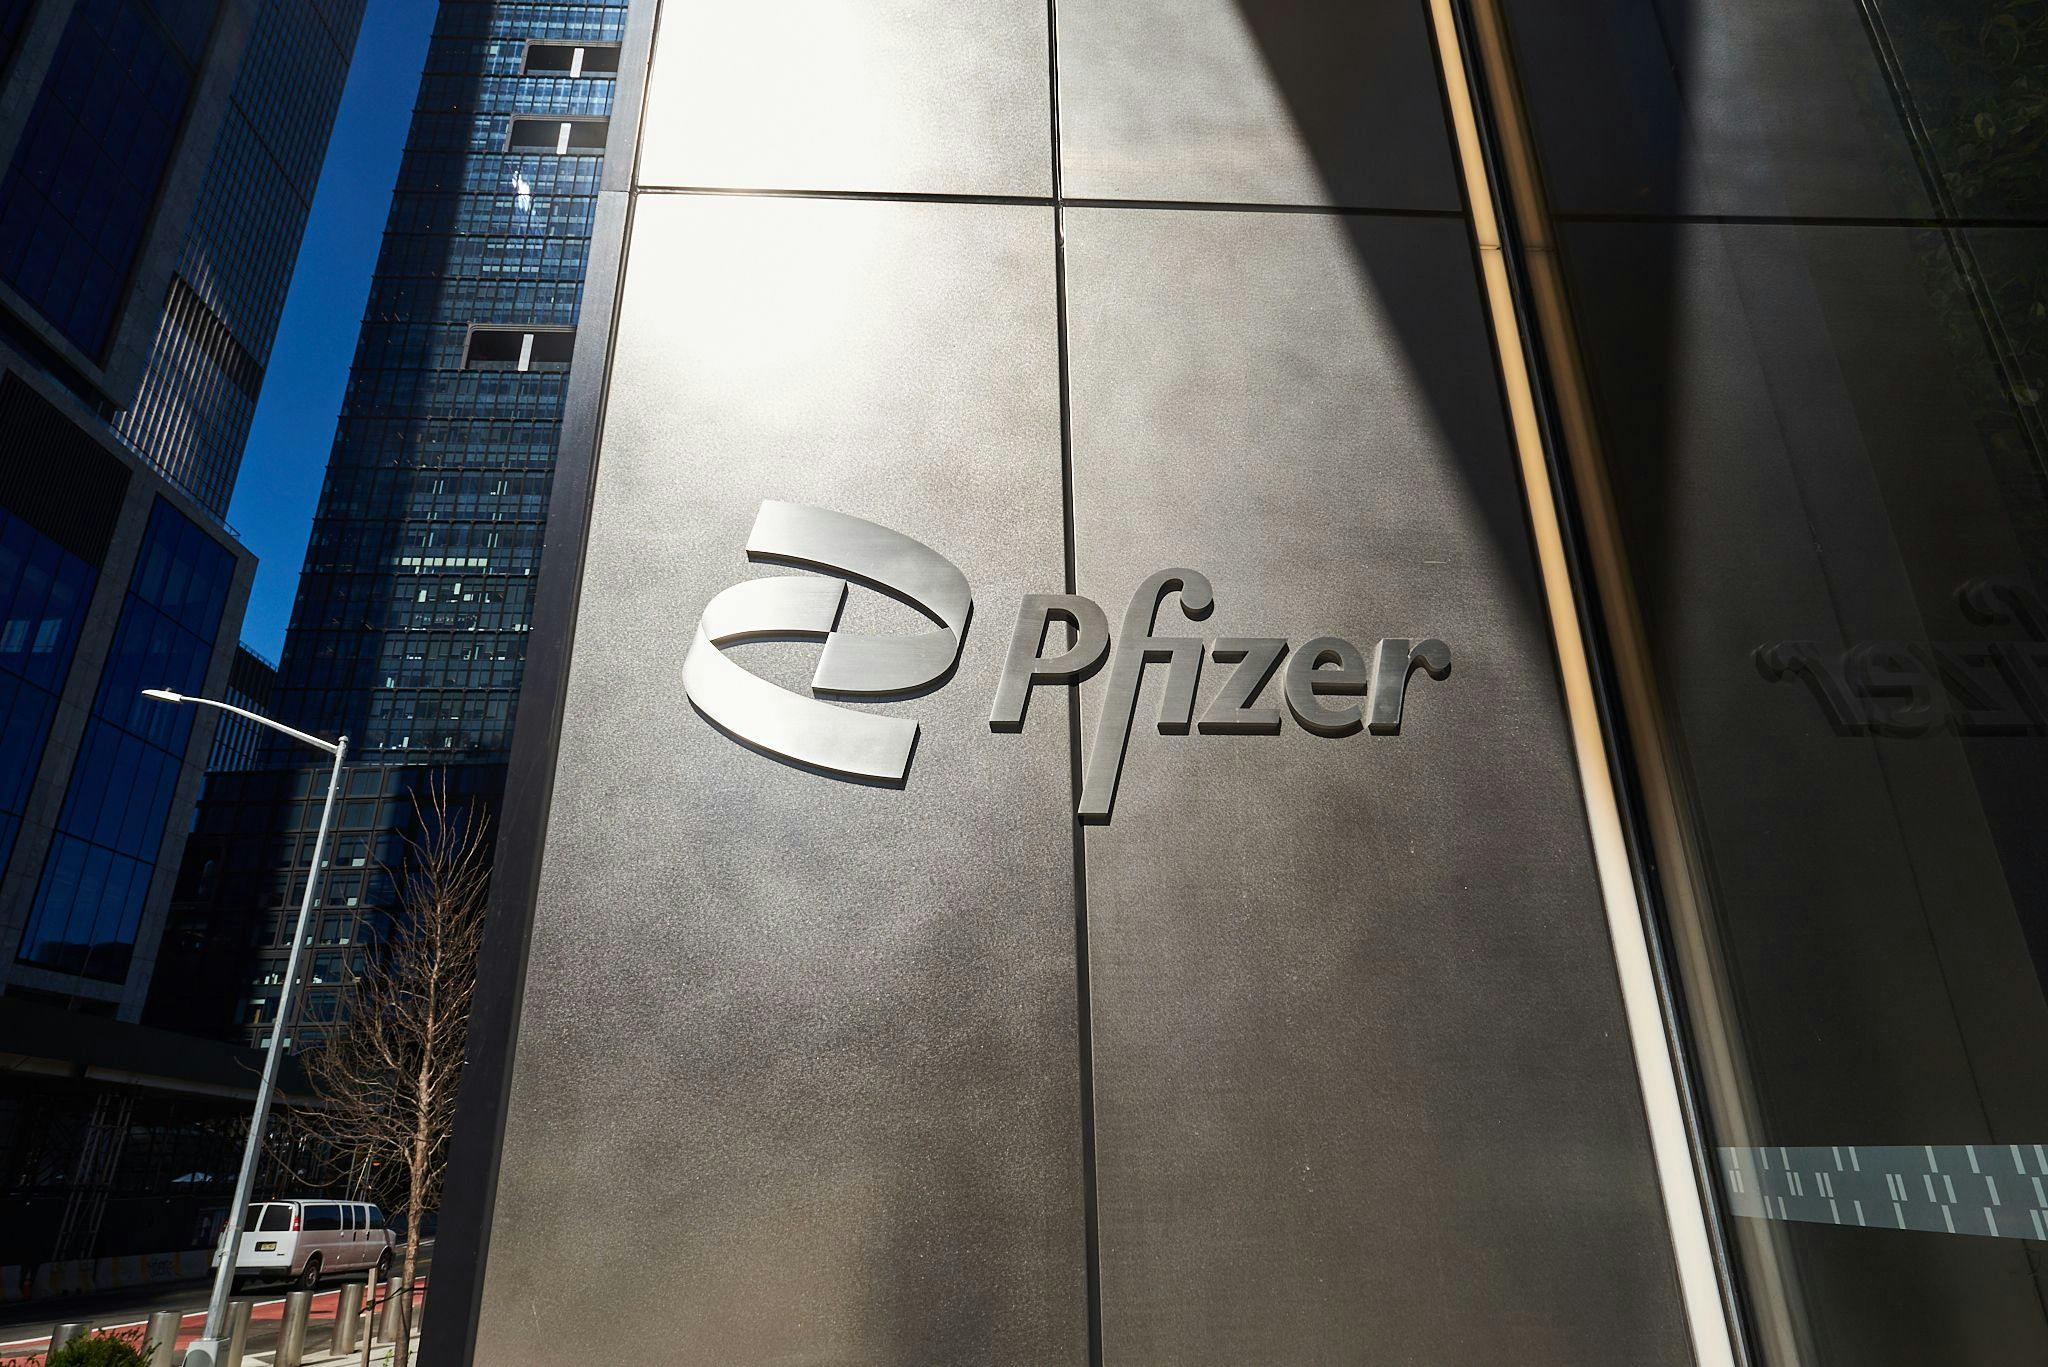 After tornado damages Pfizer plant, hospitals brace for shortages